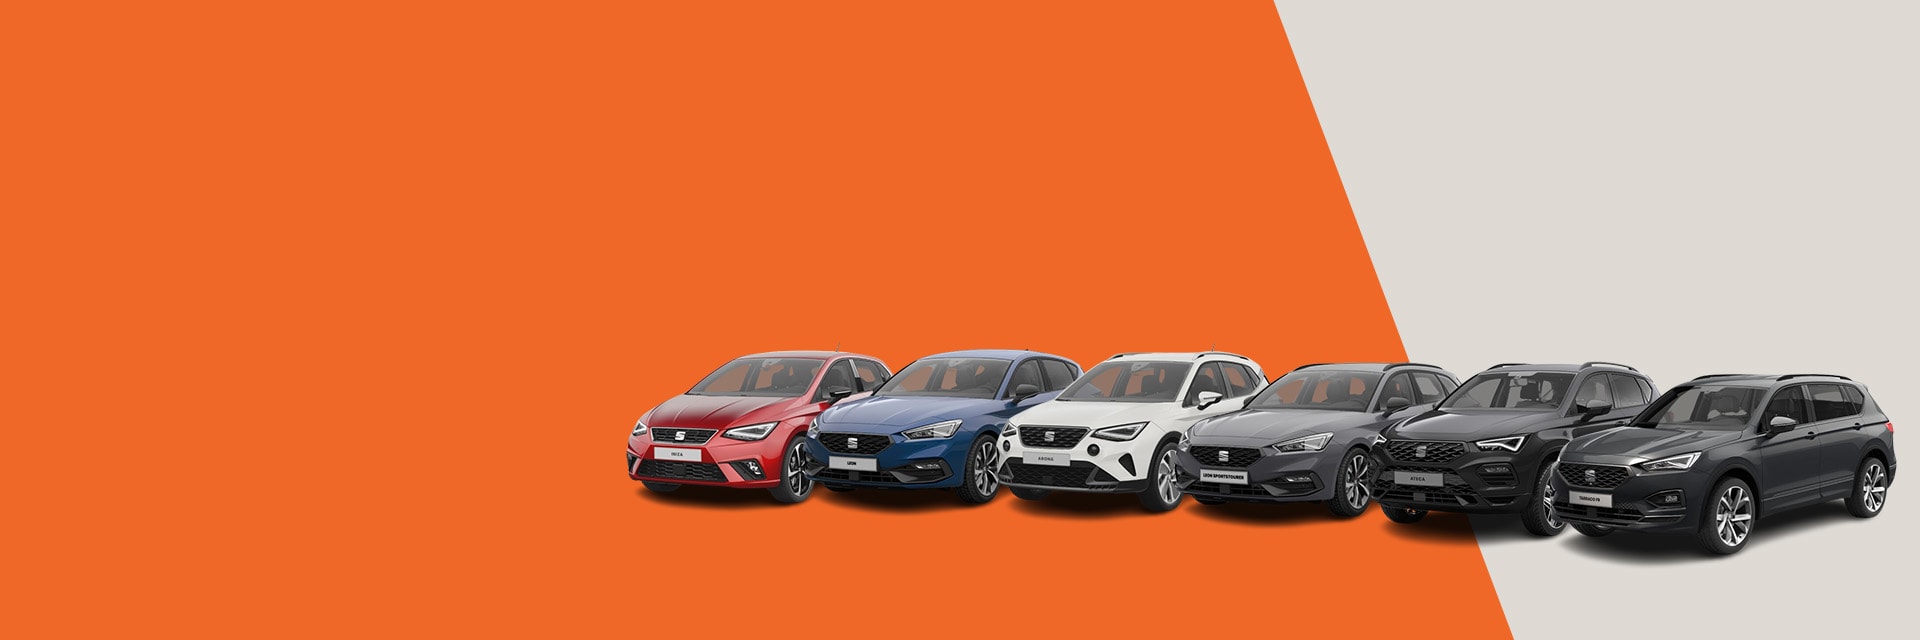 2024 SEAT new car model range on orange background.